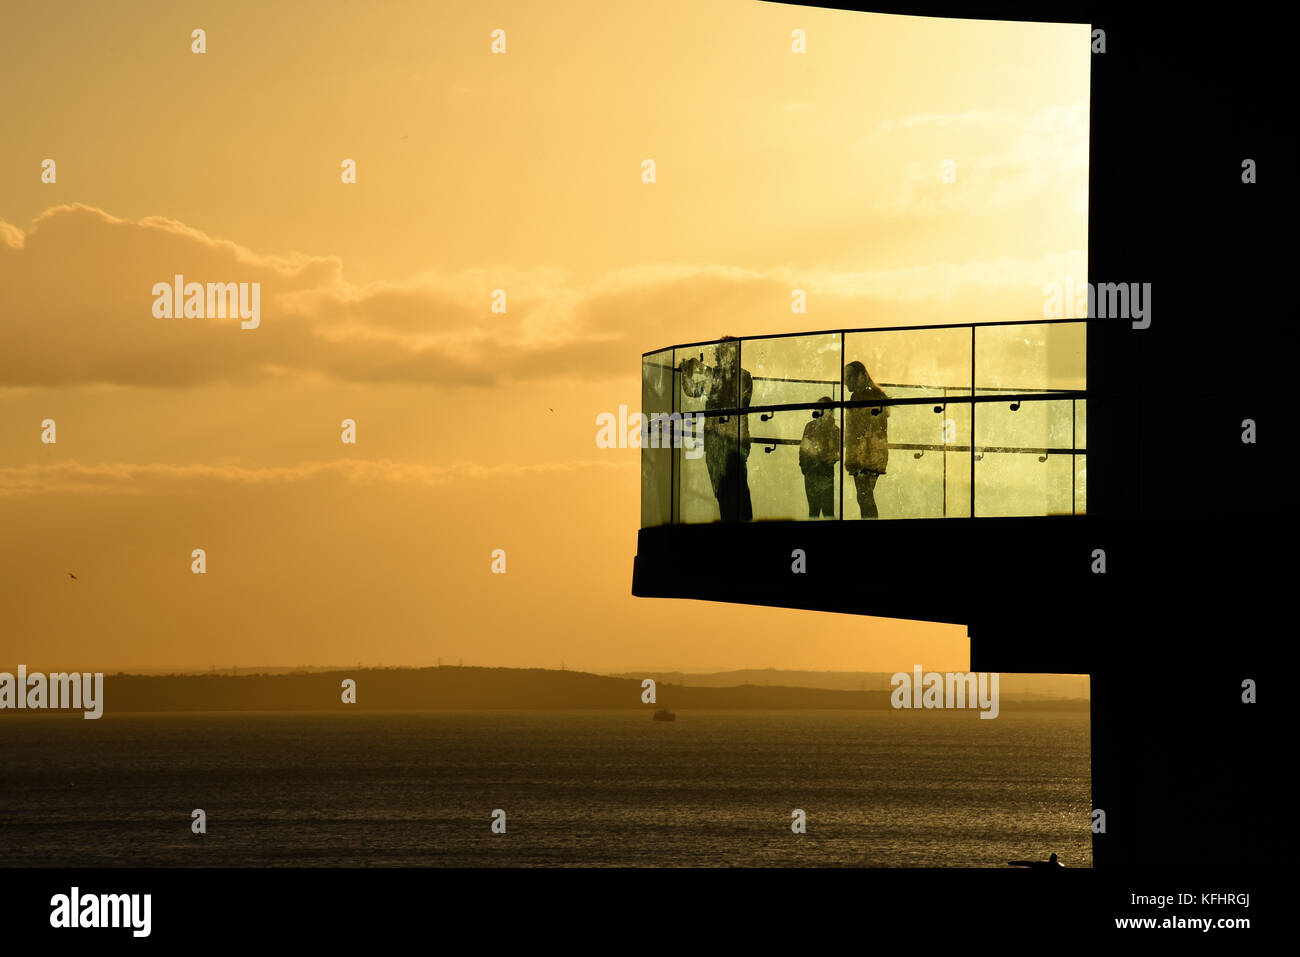 Piattaforma panoramica Southend on Sea, Essex al tramonto con persone che guardano l'estuario del Tamigi Foto Stock